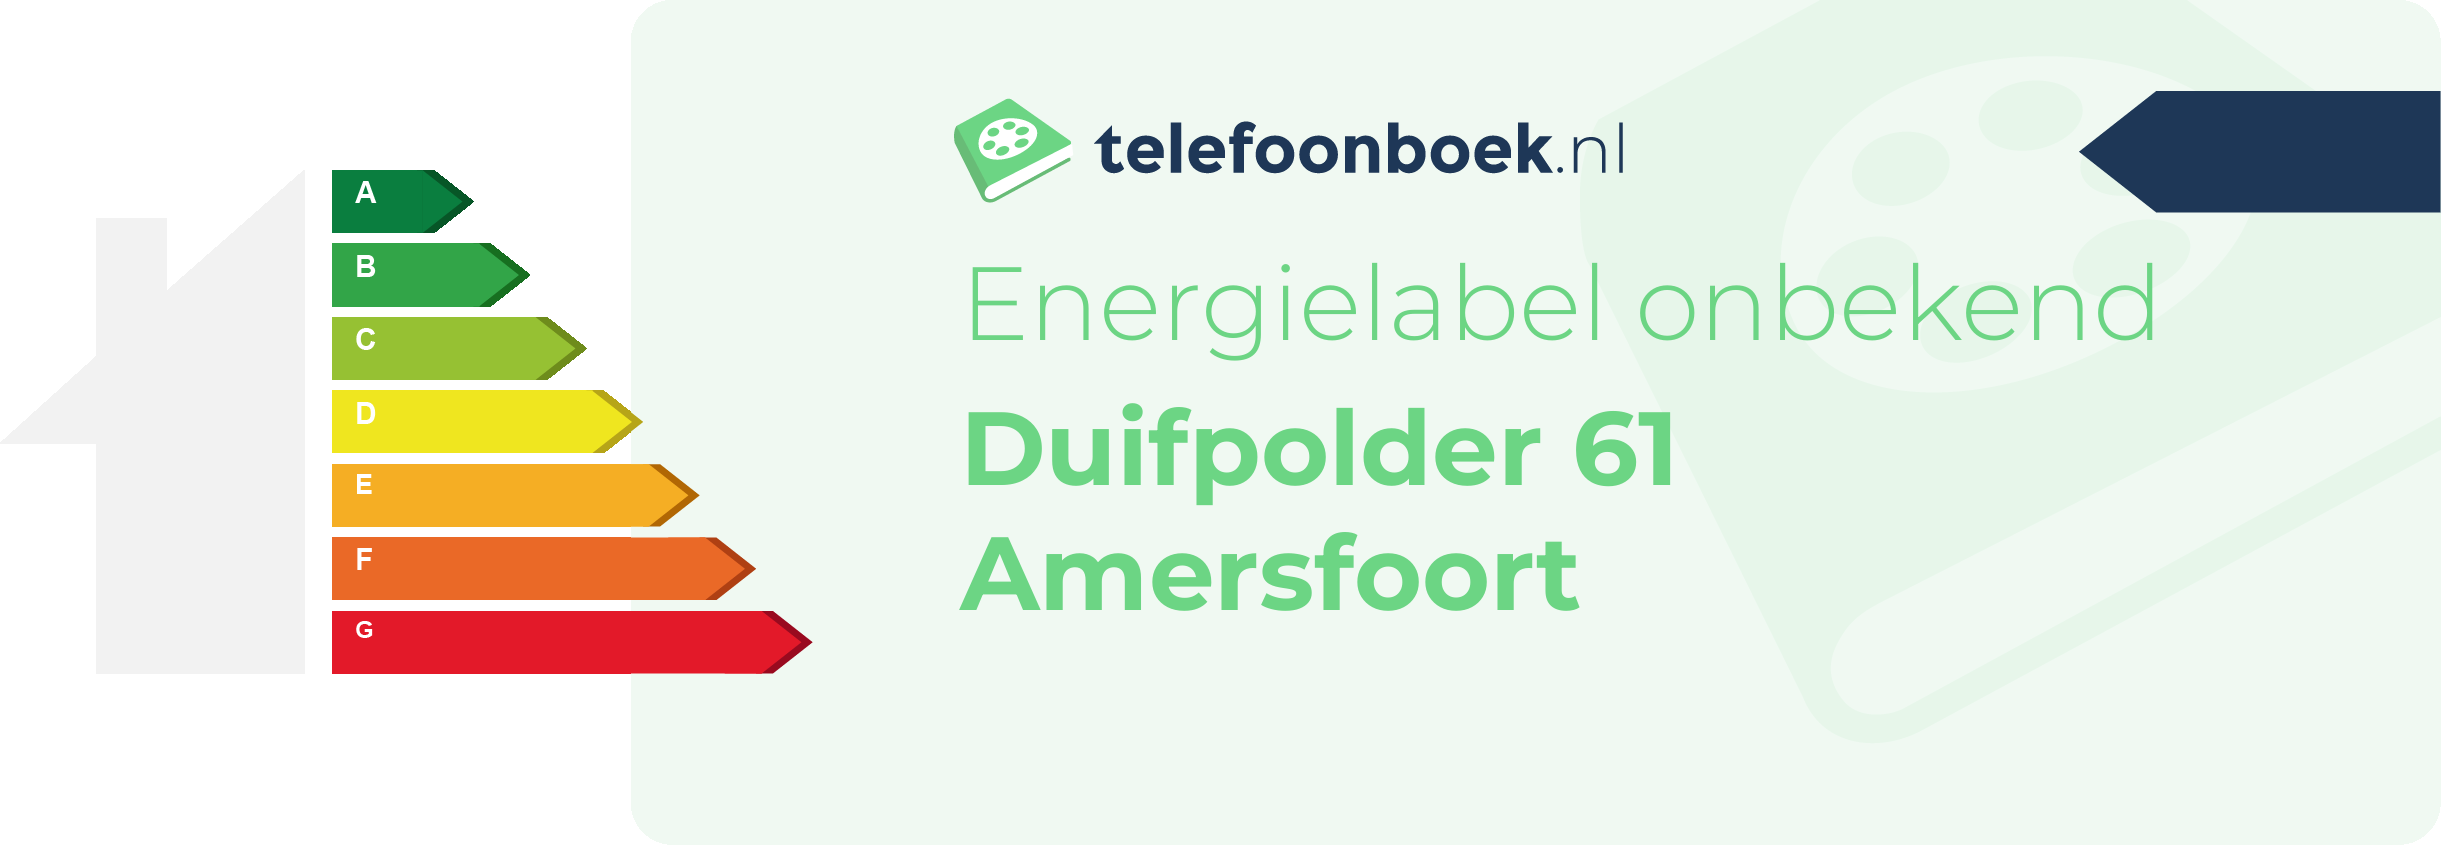 Energielabel Duifpolder 61 Amersfoort